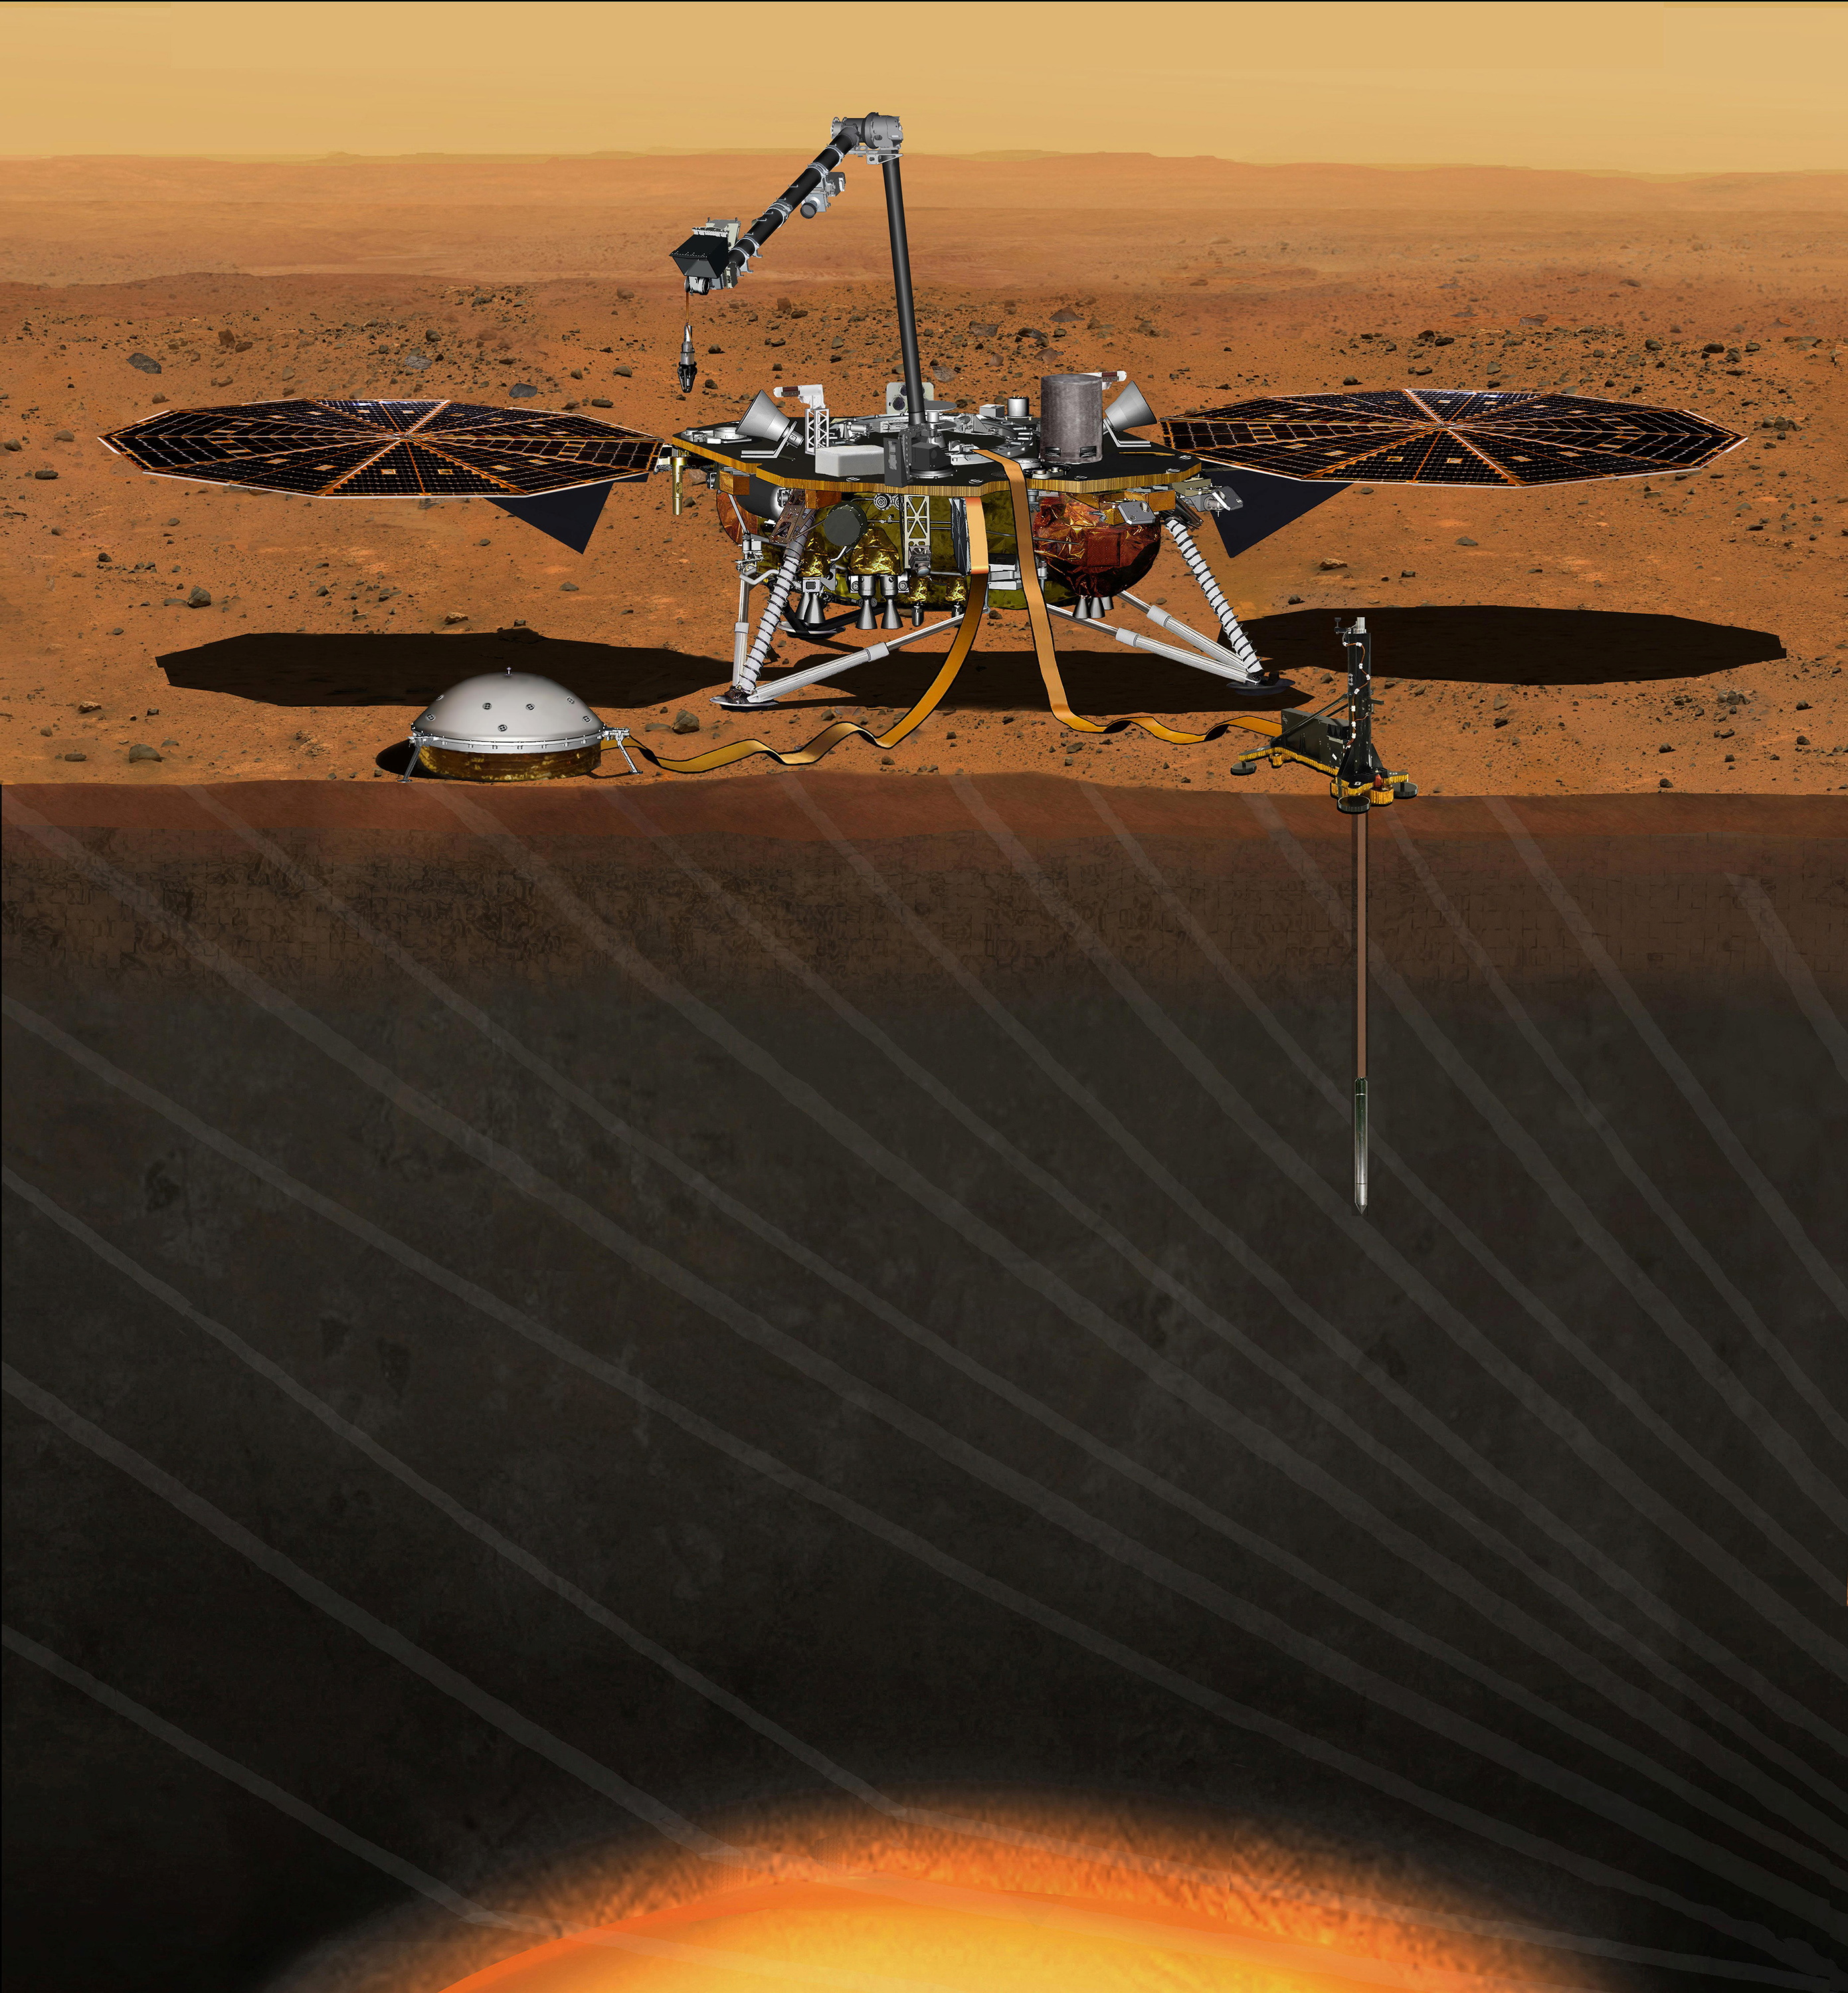 InSight landete am 26. November 2018 auf dem Mars.  Ausgestattet mit zwei Solarpaneelen von jeweils 2,2 Metern Breite soll es die primären wissenschaftlichen Ziele der Mission im ersten Jahr auf dem Mars (fast zwei Jahre) erfüllen.  Gelände) (REUTERS/NASA/JPL-Caltech/Handbuch)